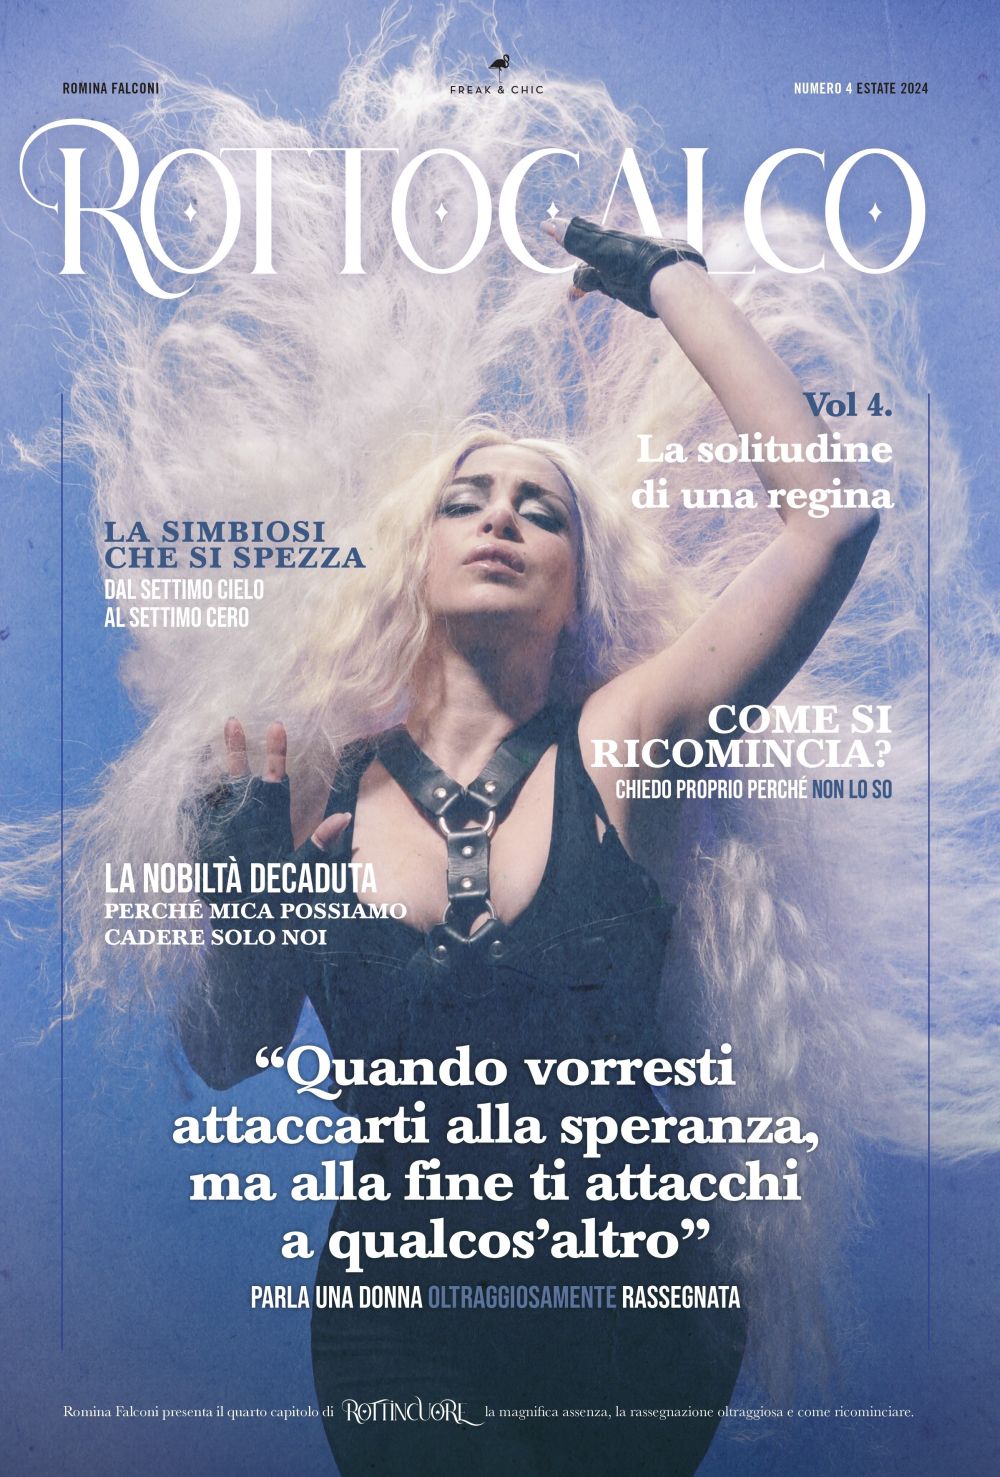 Rottocalco vol 4 è il nuovo libro di Romina Falconi